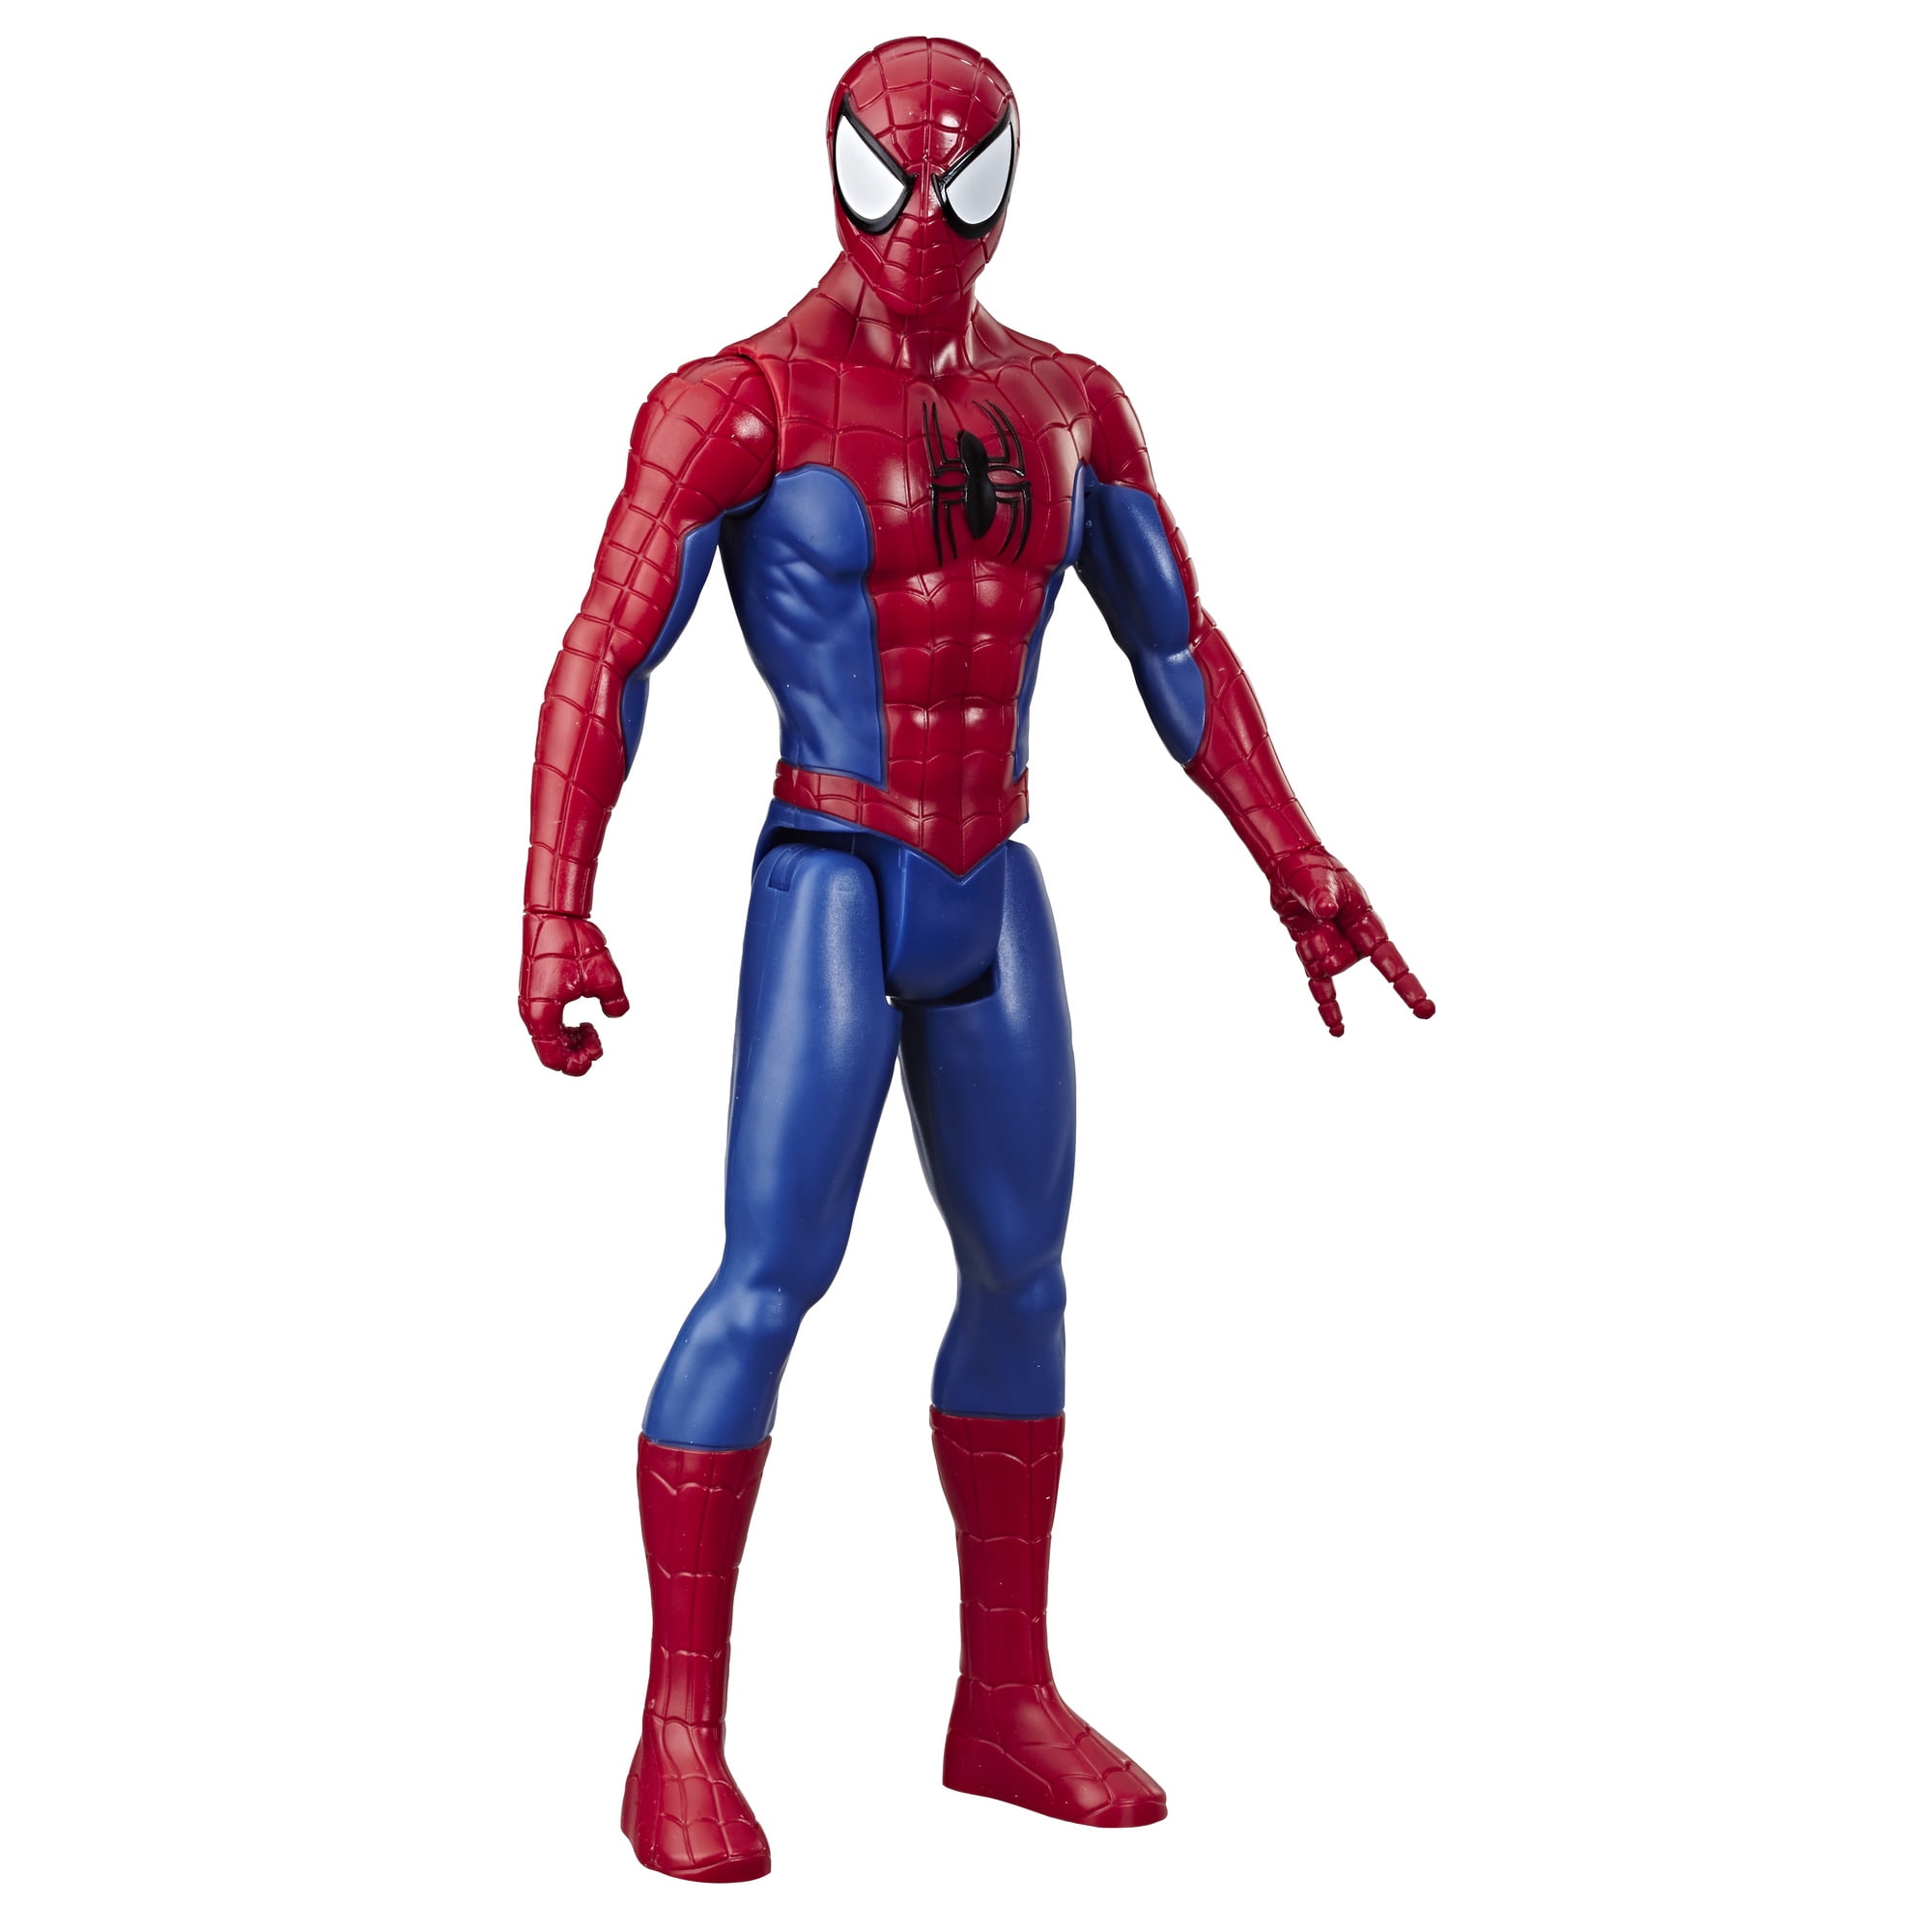 Marvel Spider-Man Titan Hero Series Spider-Man 12-inch-Scale Super Hero Action Figure